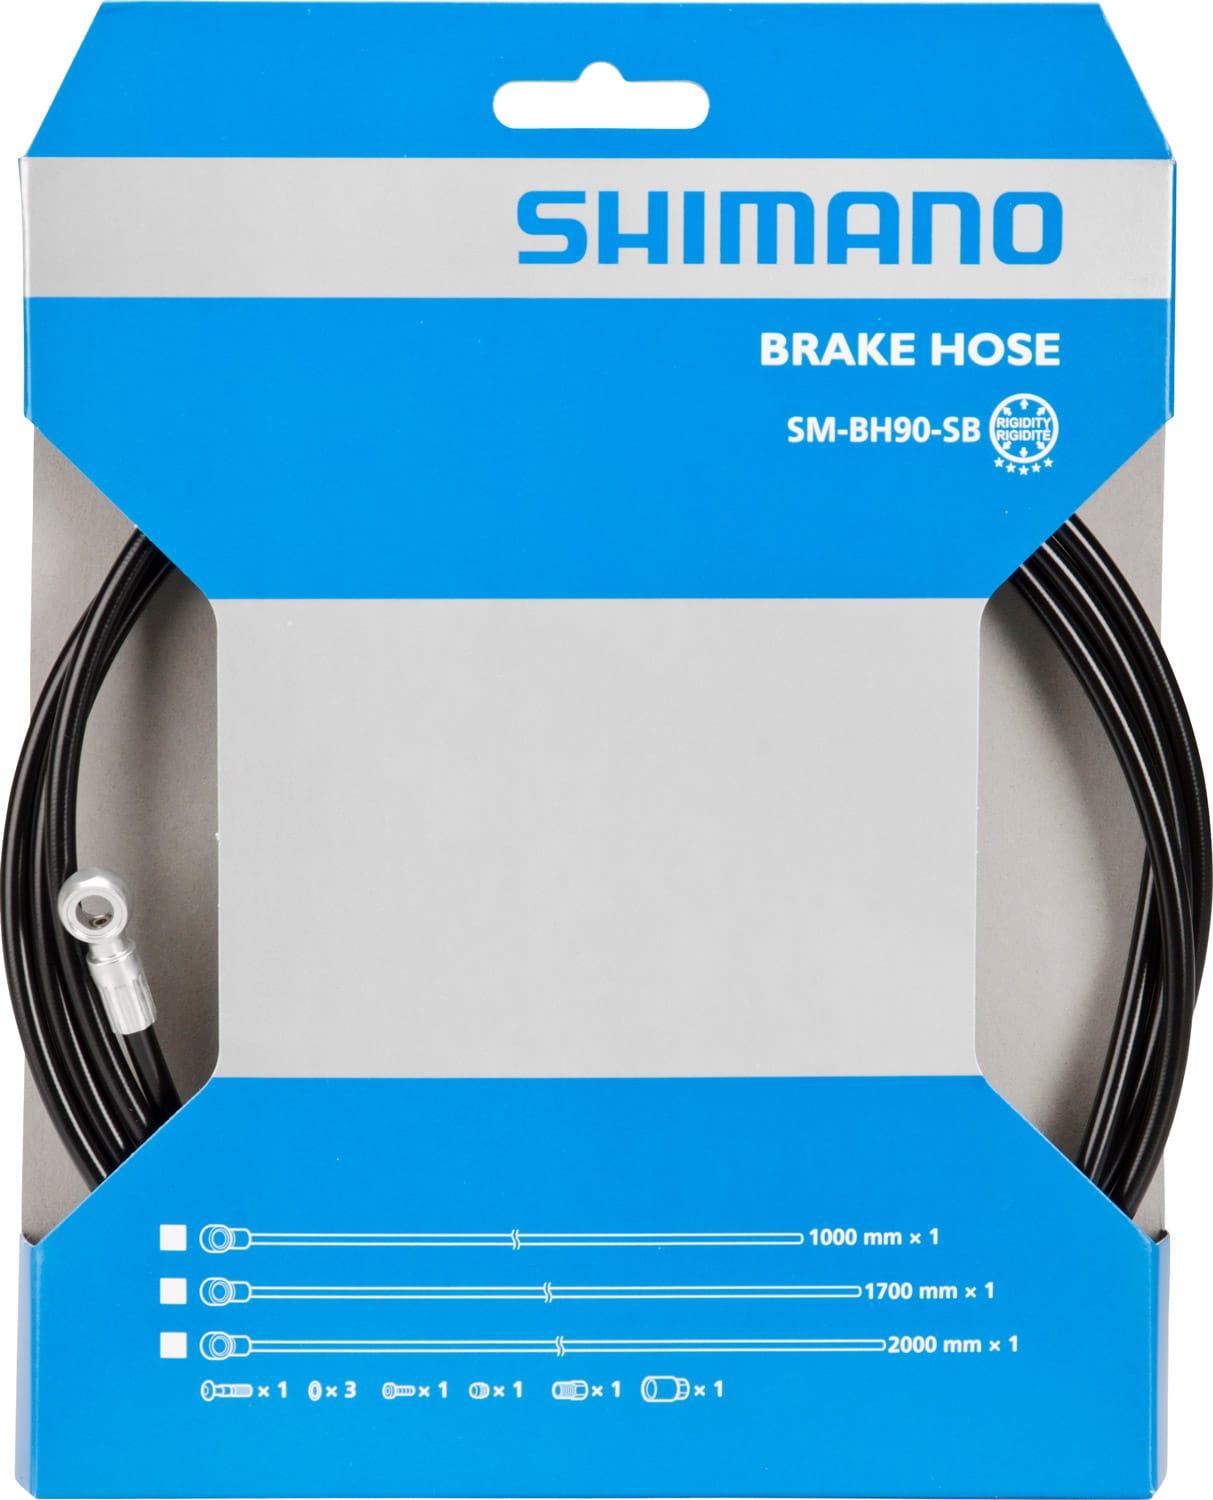 SHIMANO SM-BH90 FRONT BRAKE HOSE FOR XTR/XT/SLX/ALFINE